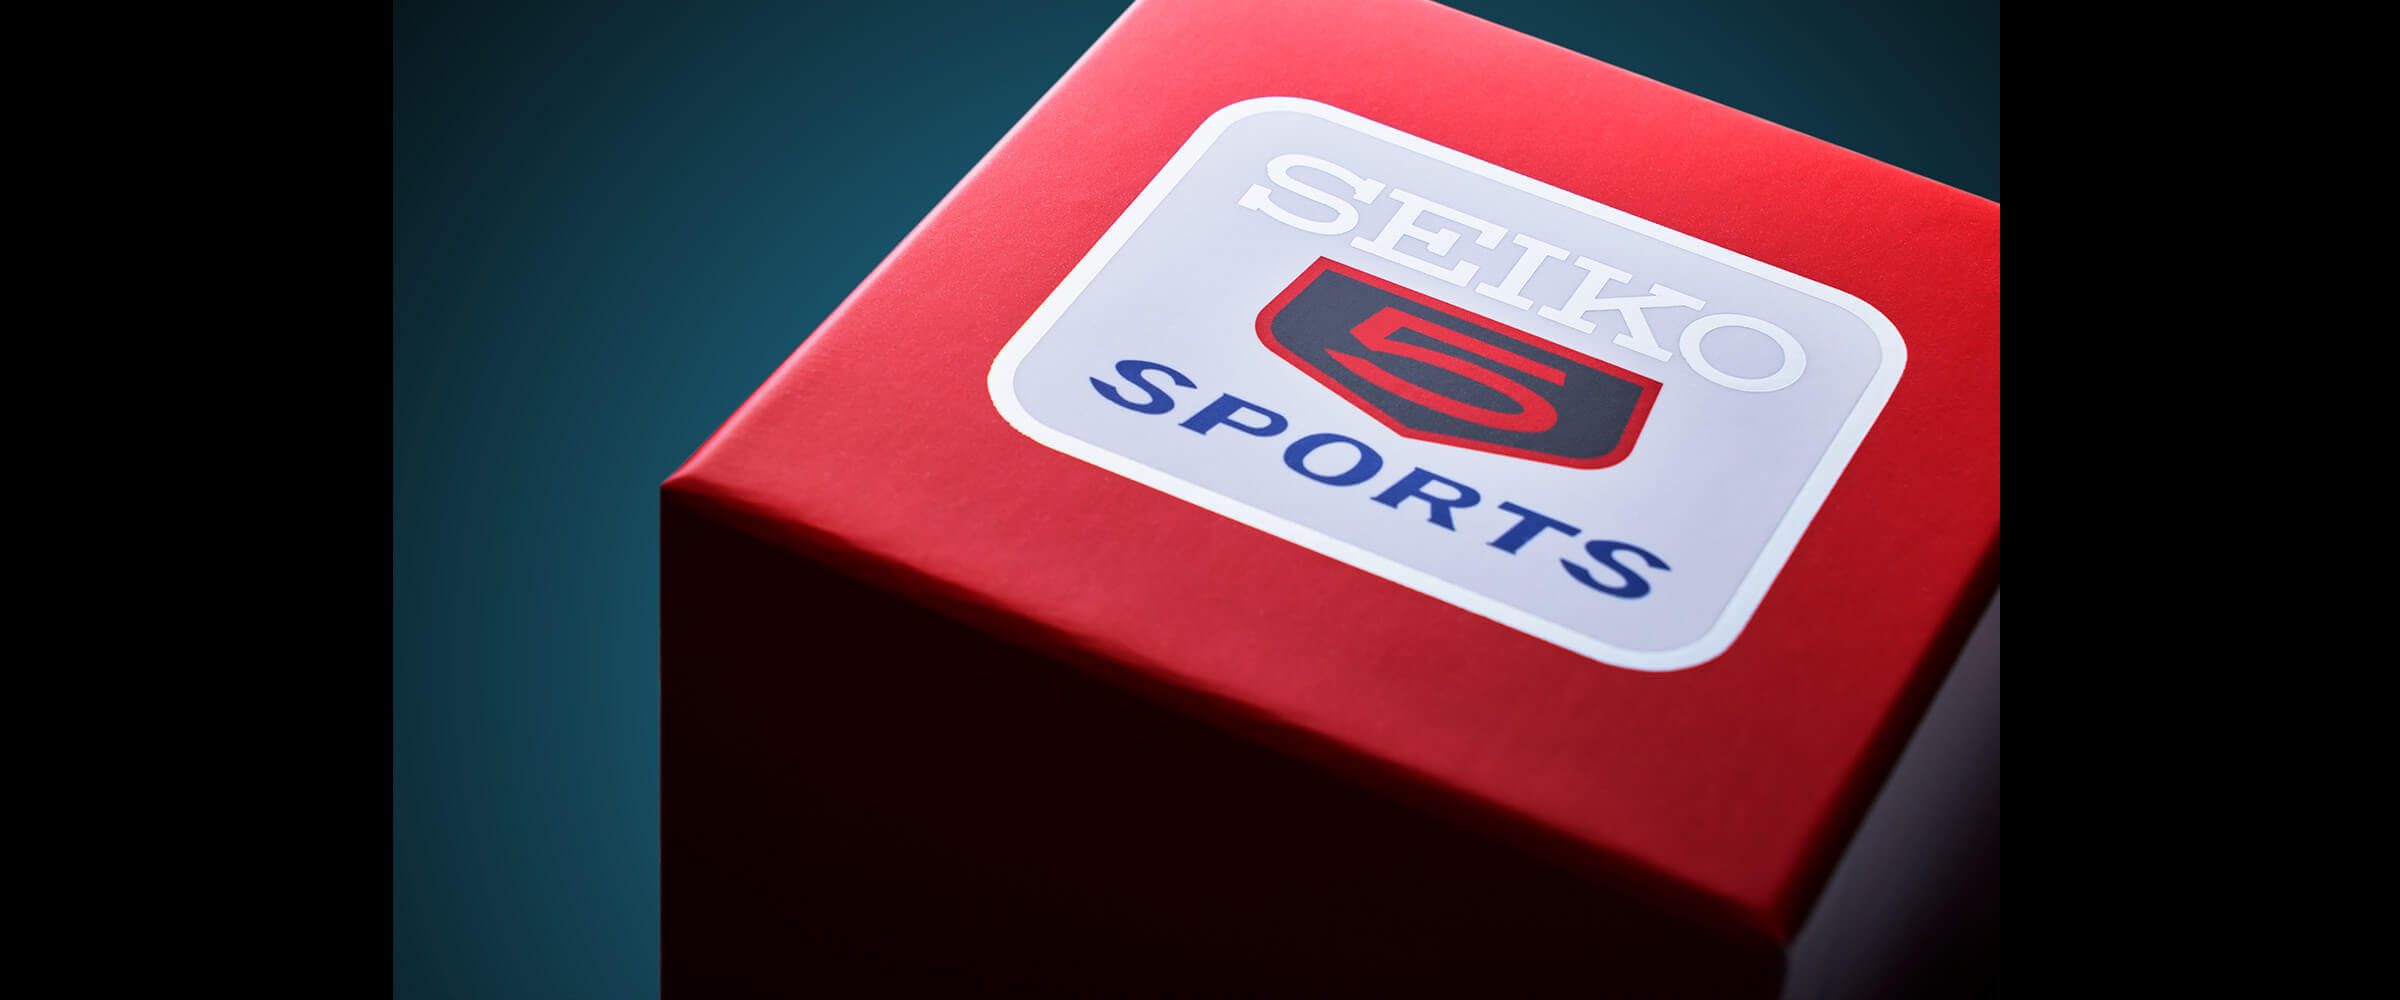 Photo of SRPK17 Seiko 5 Sports Box